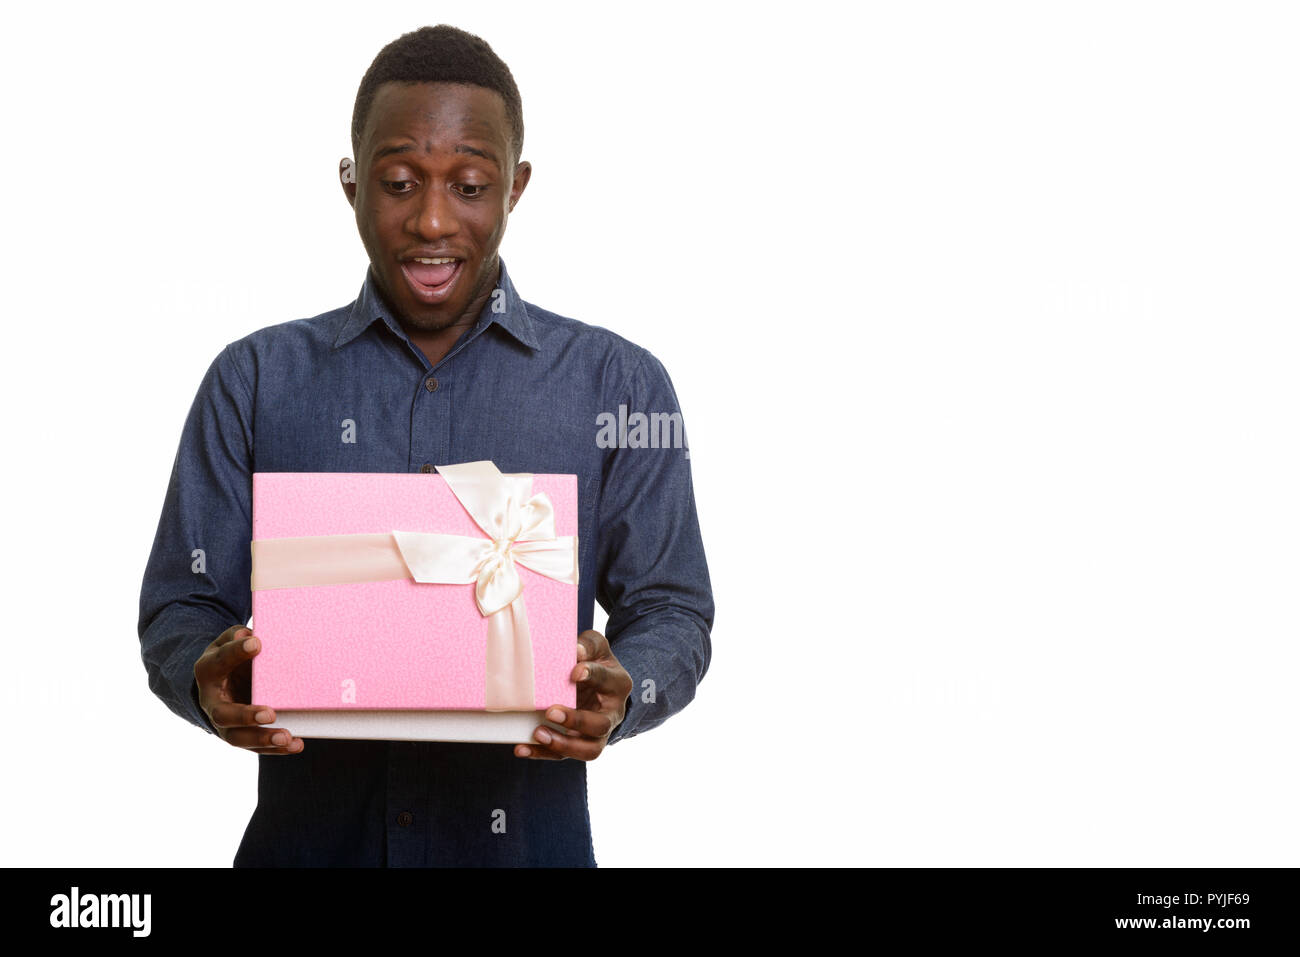 Les jeunes professionnels African man smiling et ouverture de boîte-cadeau Banque D'Images